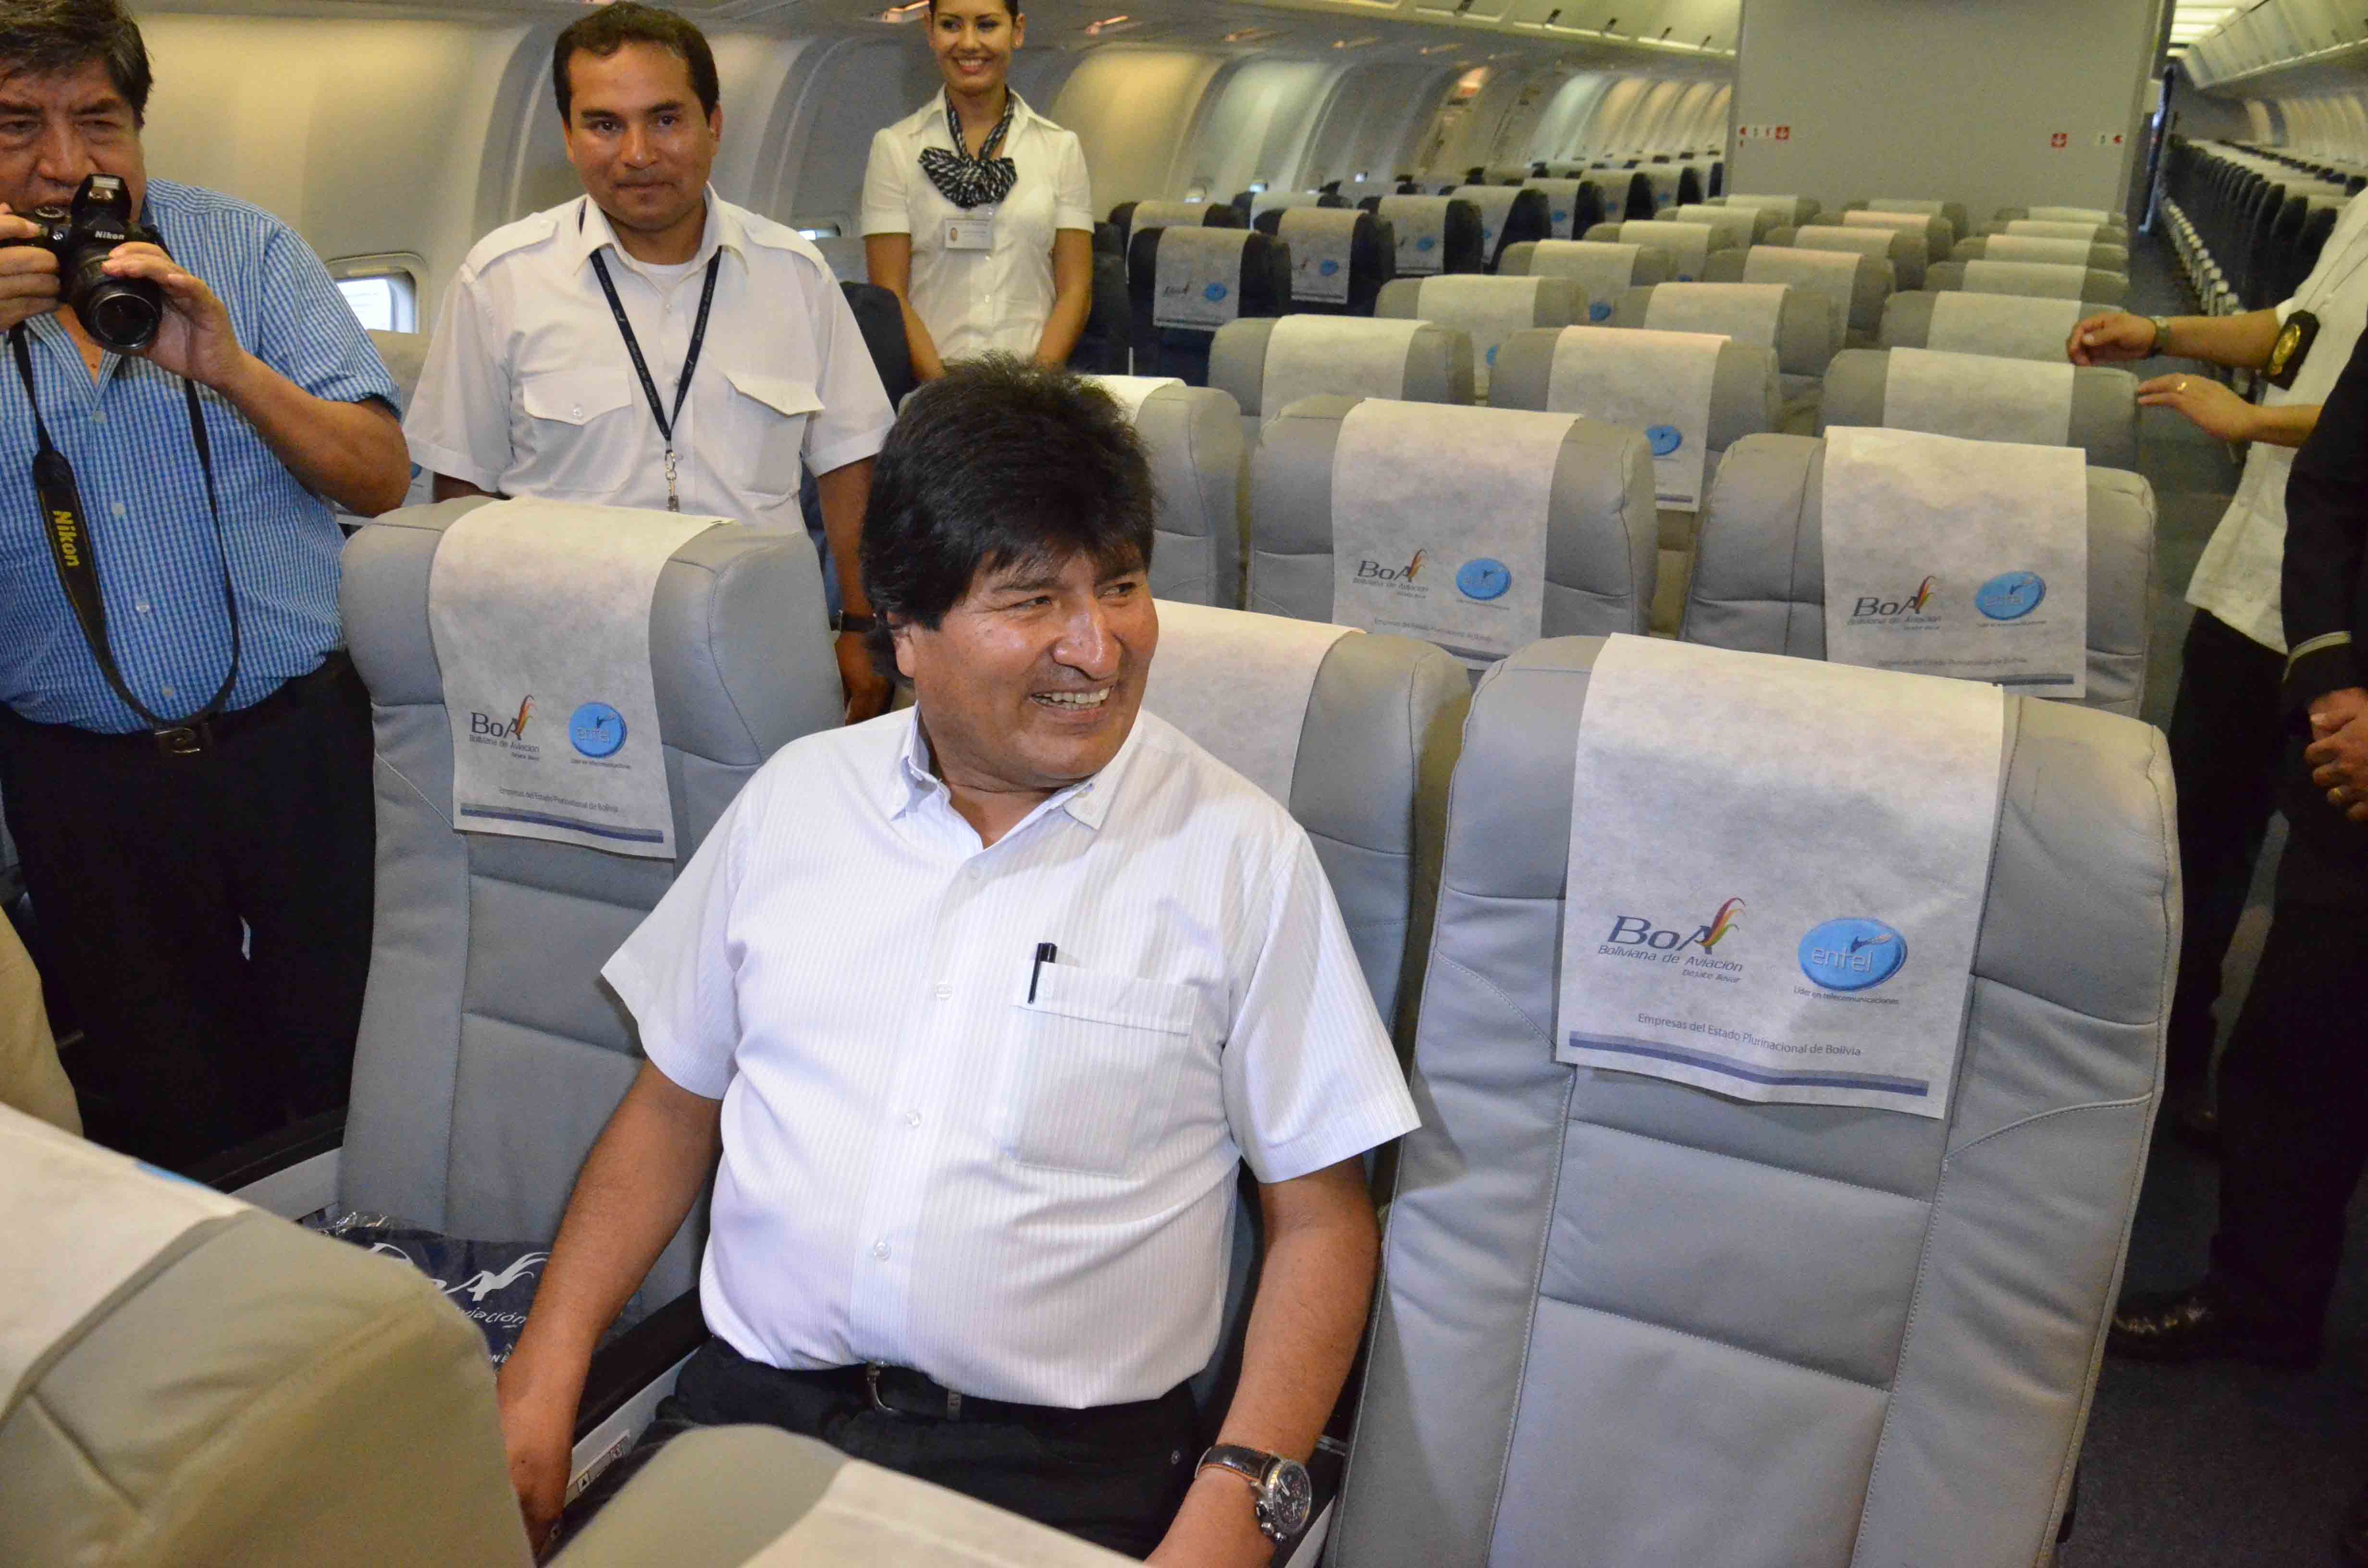 El presidente Evo Morales inaugura en el aeropuerto internacional de Viru Viru de Santa Cruz el primer vuelo trasatlántico de Boliviana de Aviación (BoA) entre esa ciudad y Madrid, España, con avión y tripulación propia. (Foto: ABI)